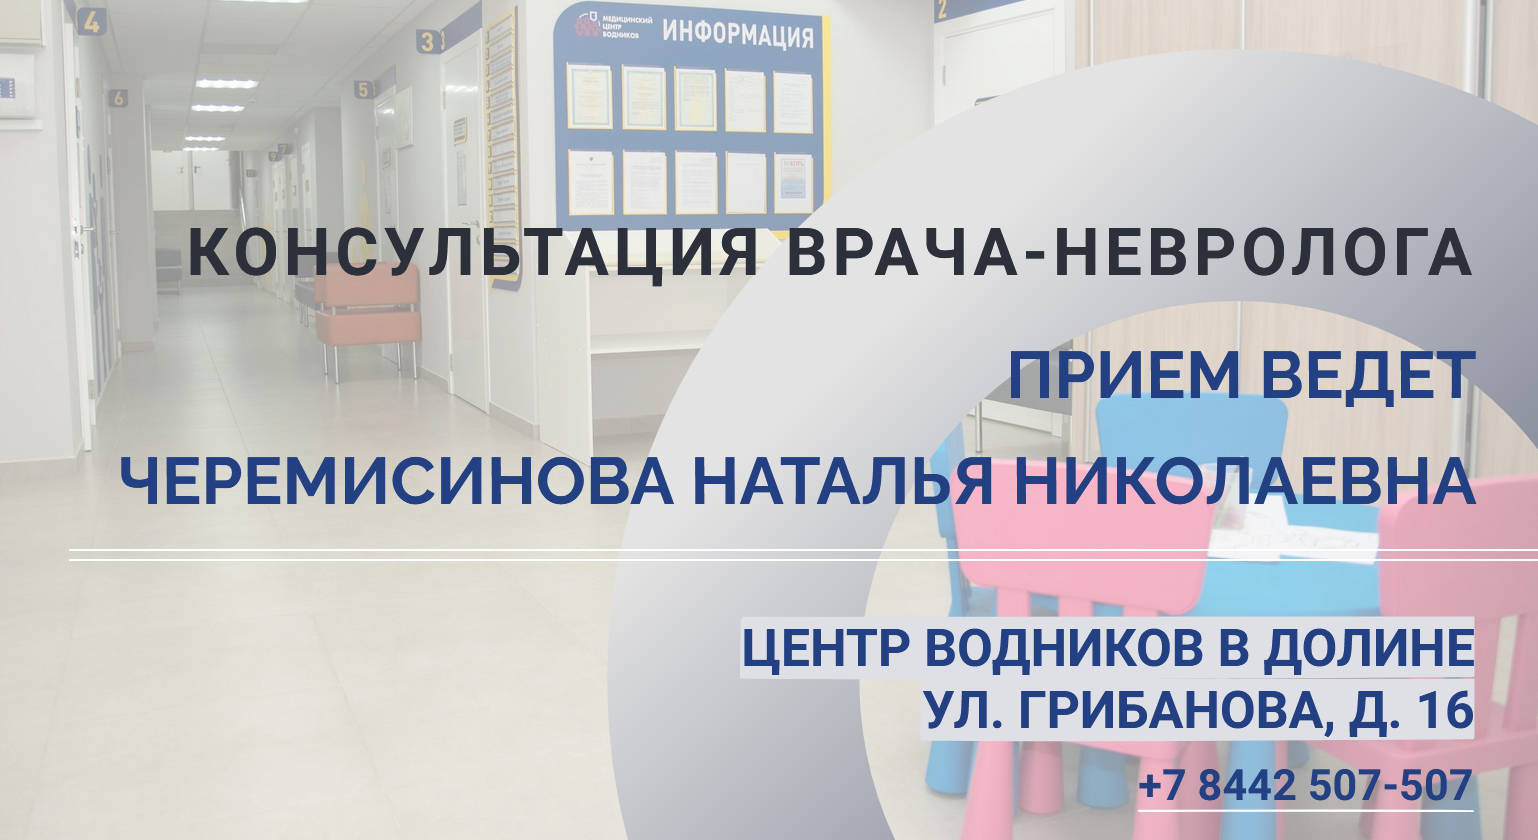 Фгбуз волгоградский медицинский клинический центр фмба россии. Медицинский центр Водников.